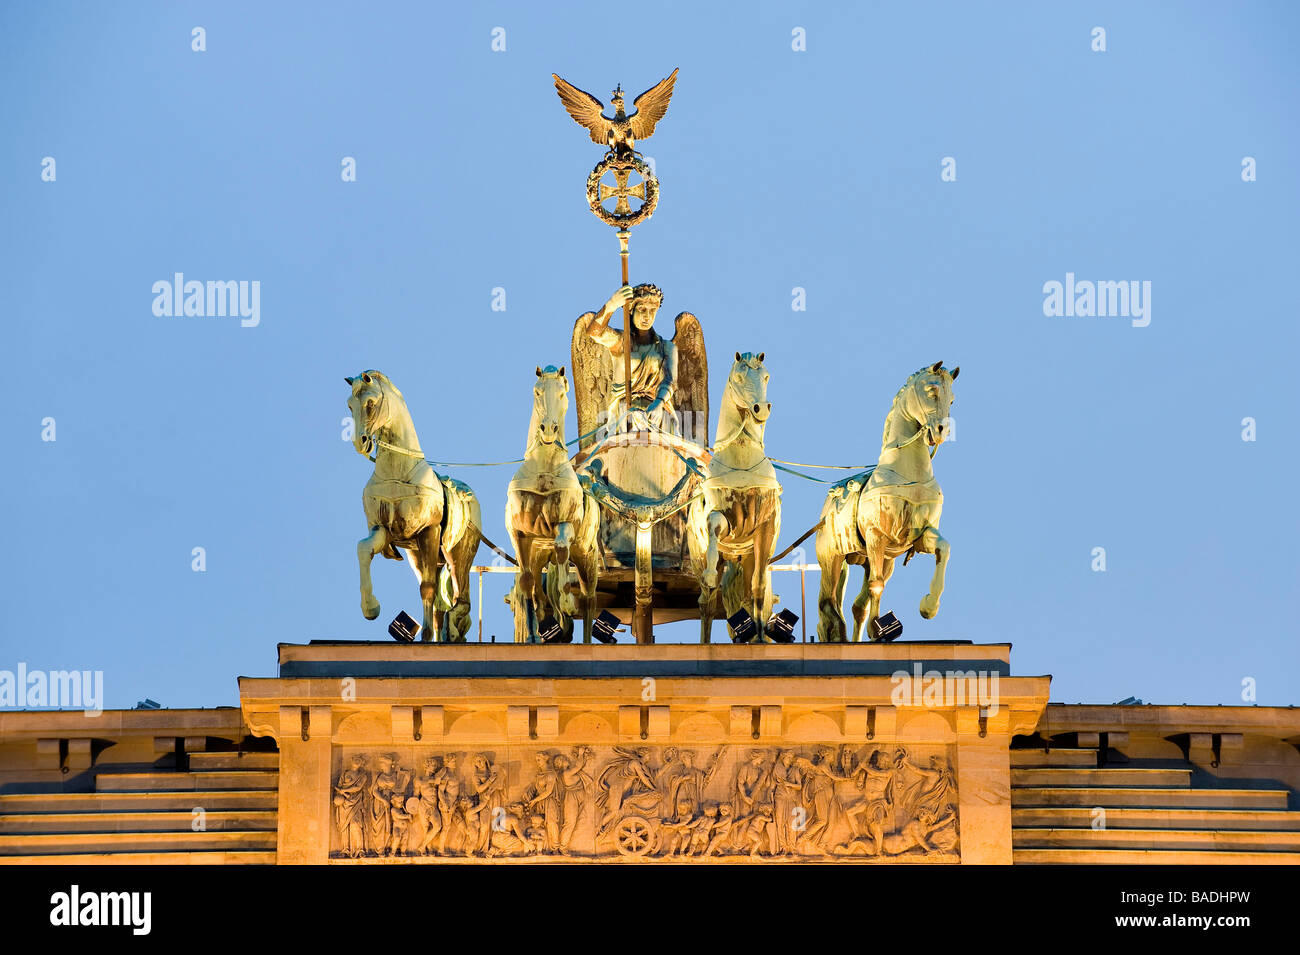 Allemagne, Berlin, Mitte or Berlin-Mitte District, Brandenburg Gate Stock Photo